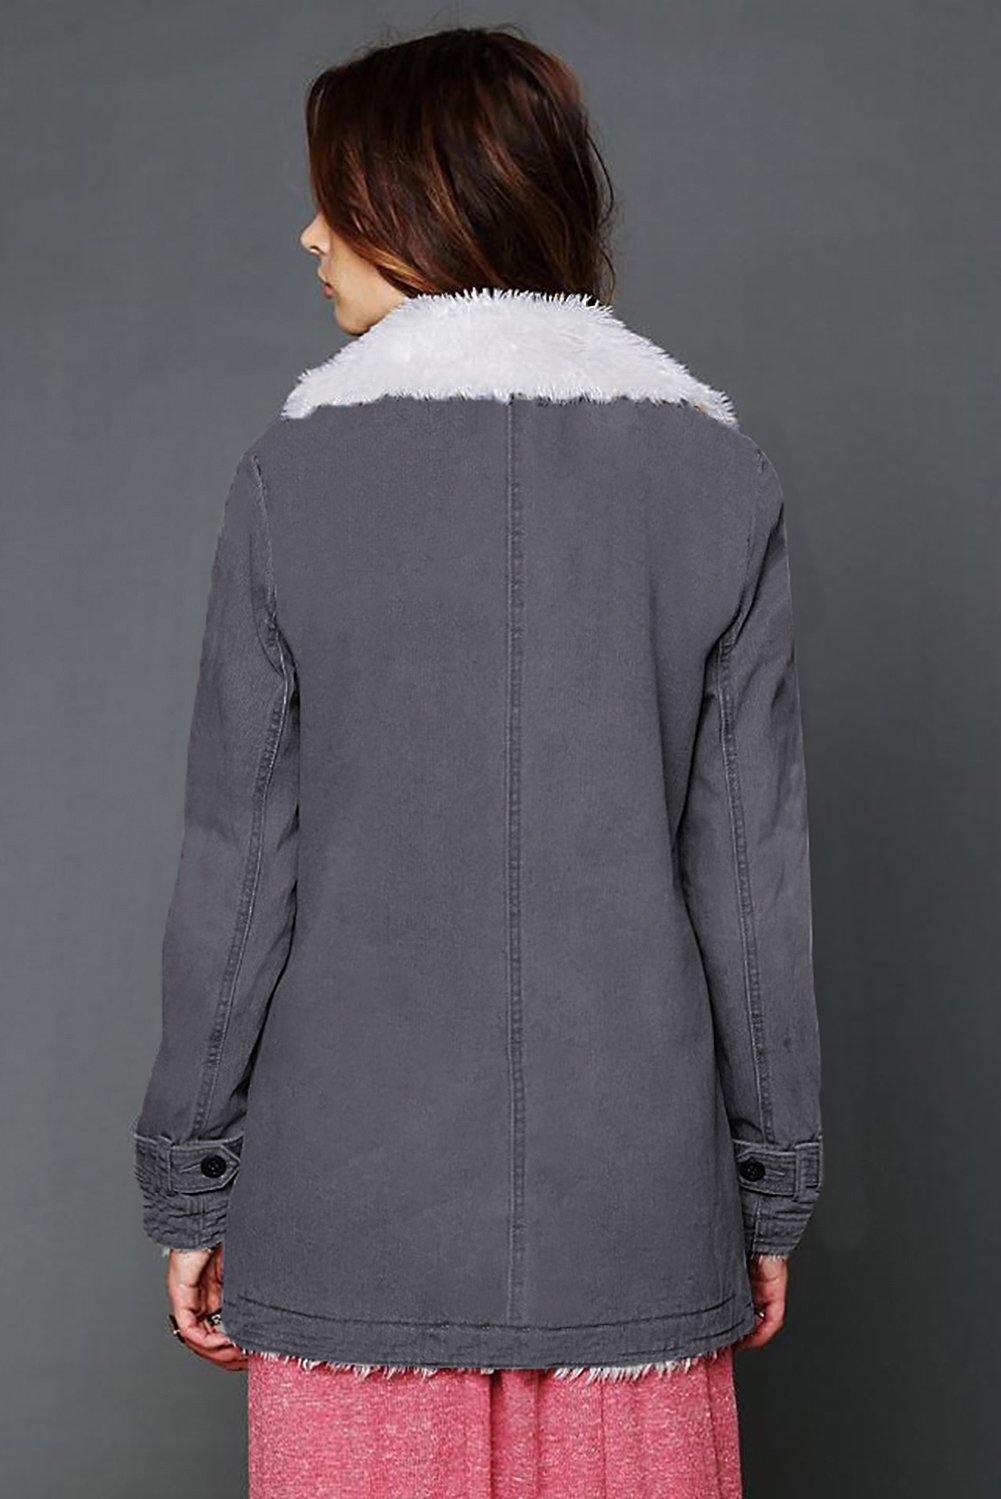 Lapel Collar All Denim Wool Warm Coat - L & M Kee, LLC